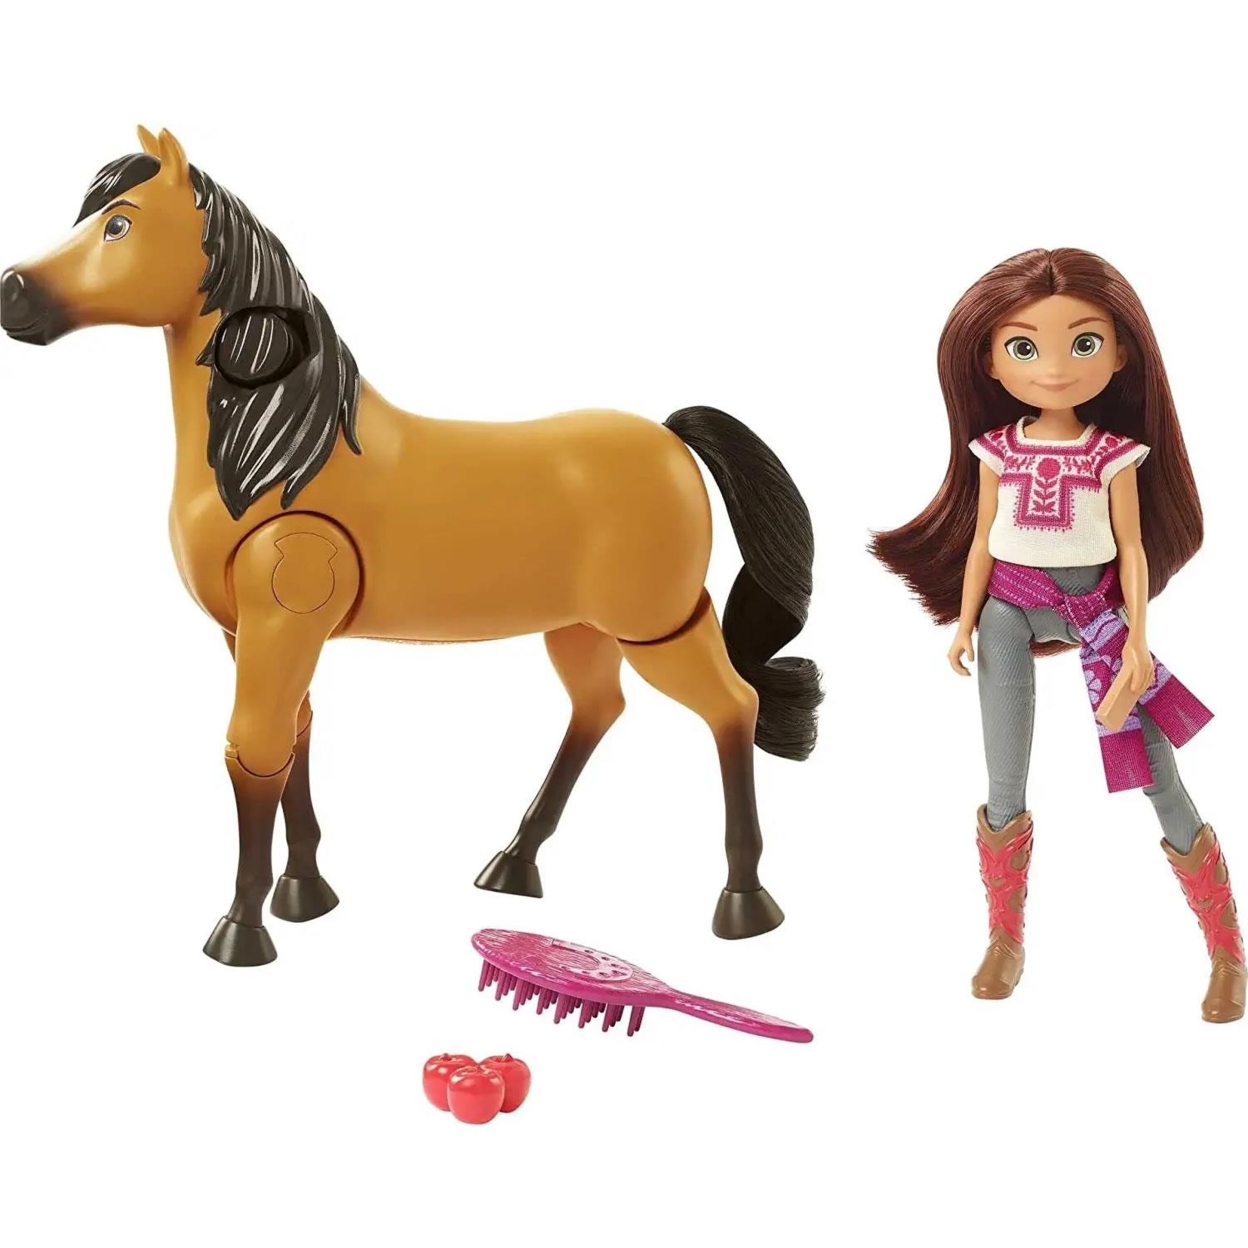 Spirit Untamed Lucky Doll & Horse Ride Together DreamWorks Moving Walking Set Mattel